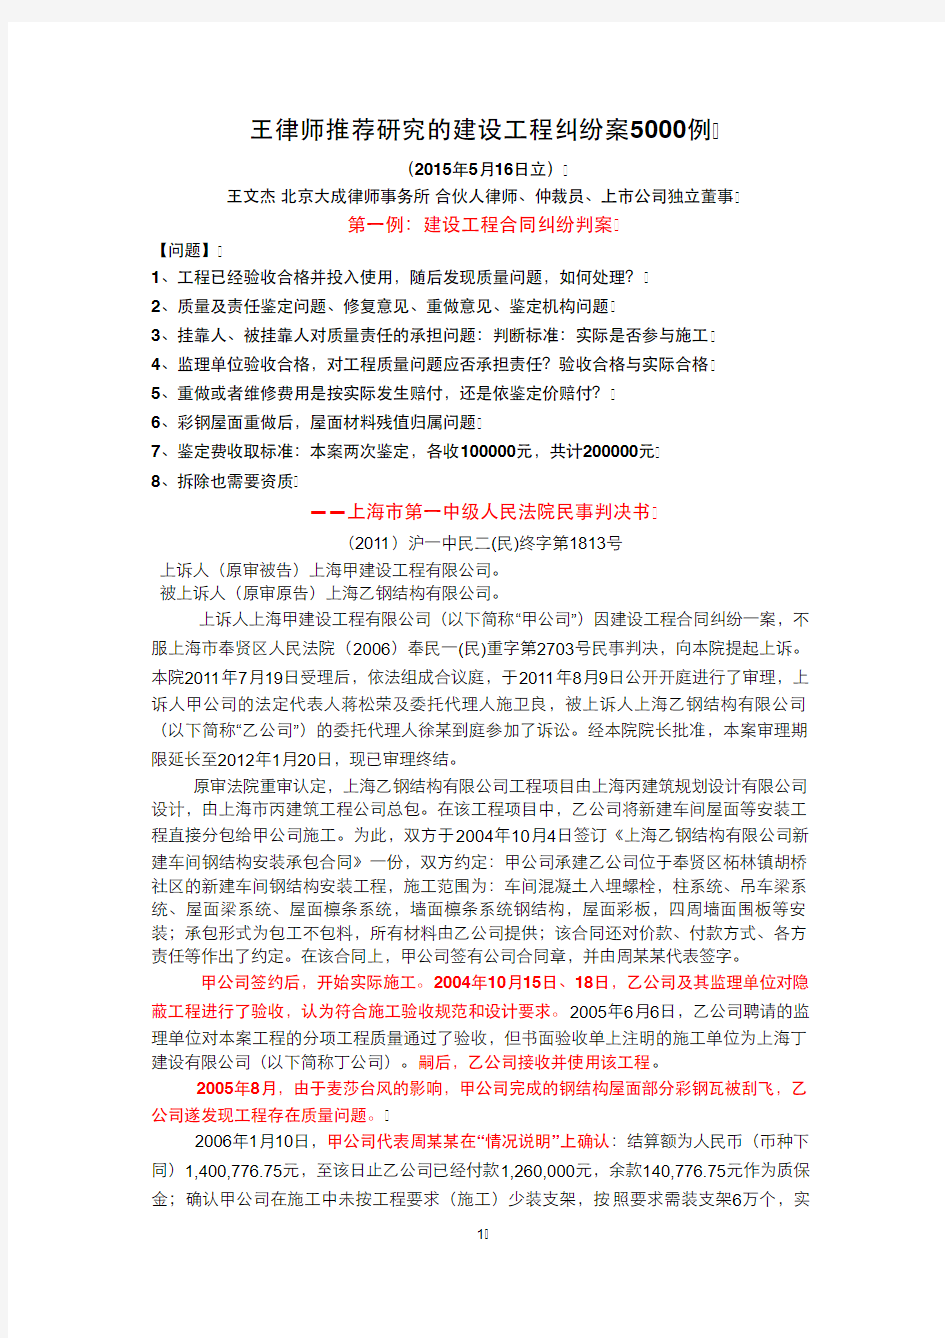 王文杰律师推荐研究的建设工程纠纷案5000例